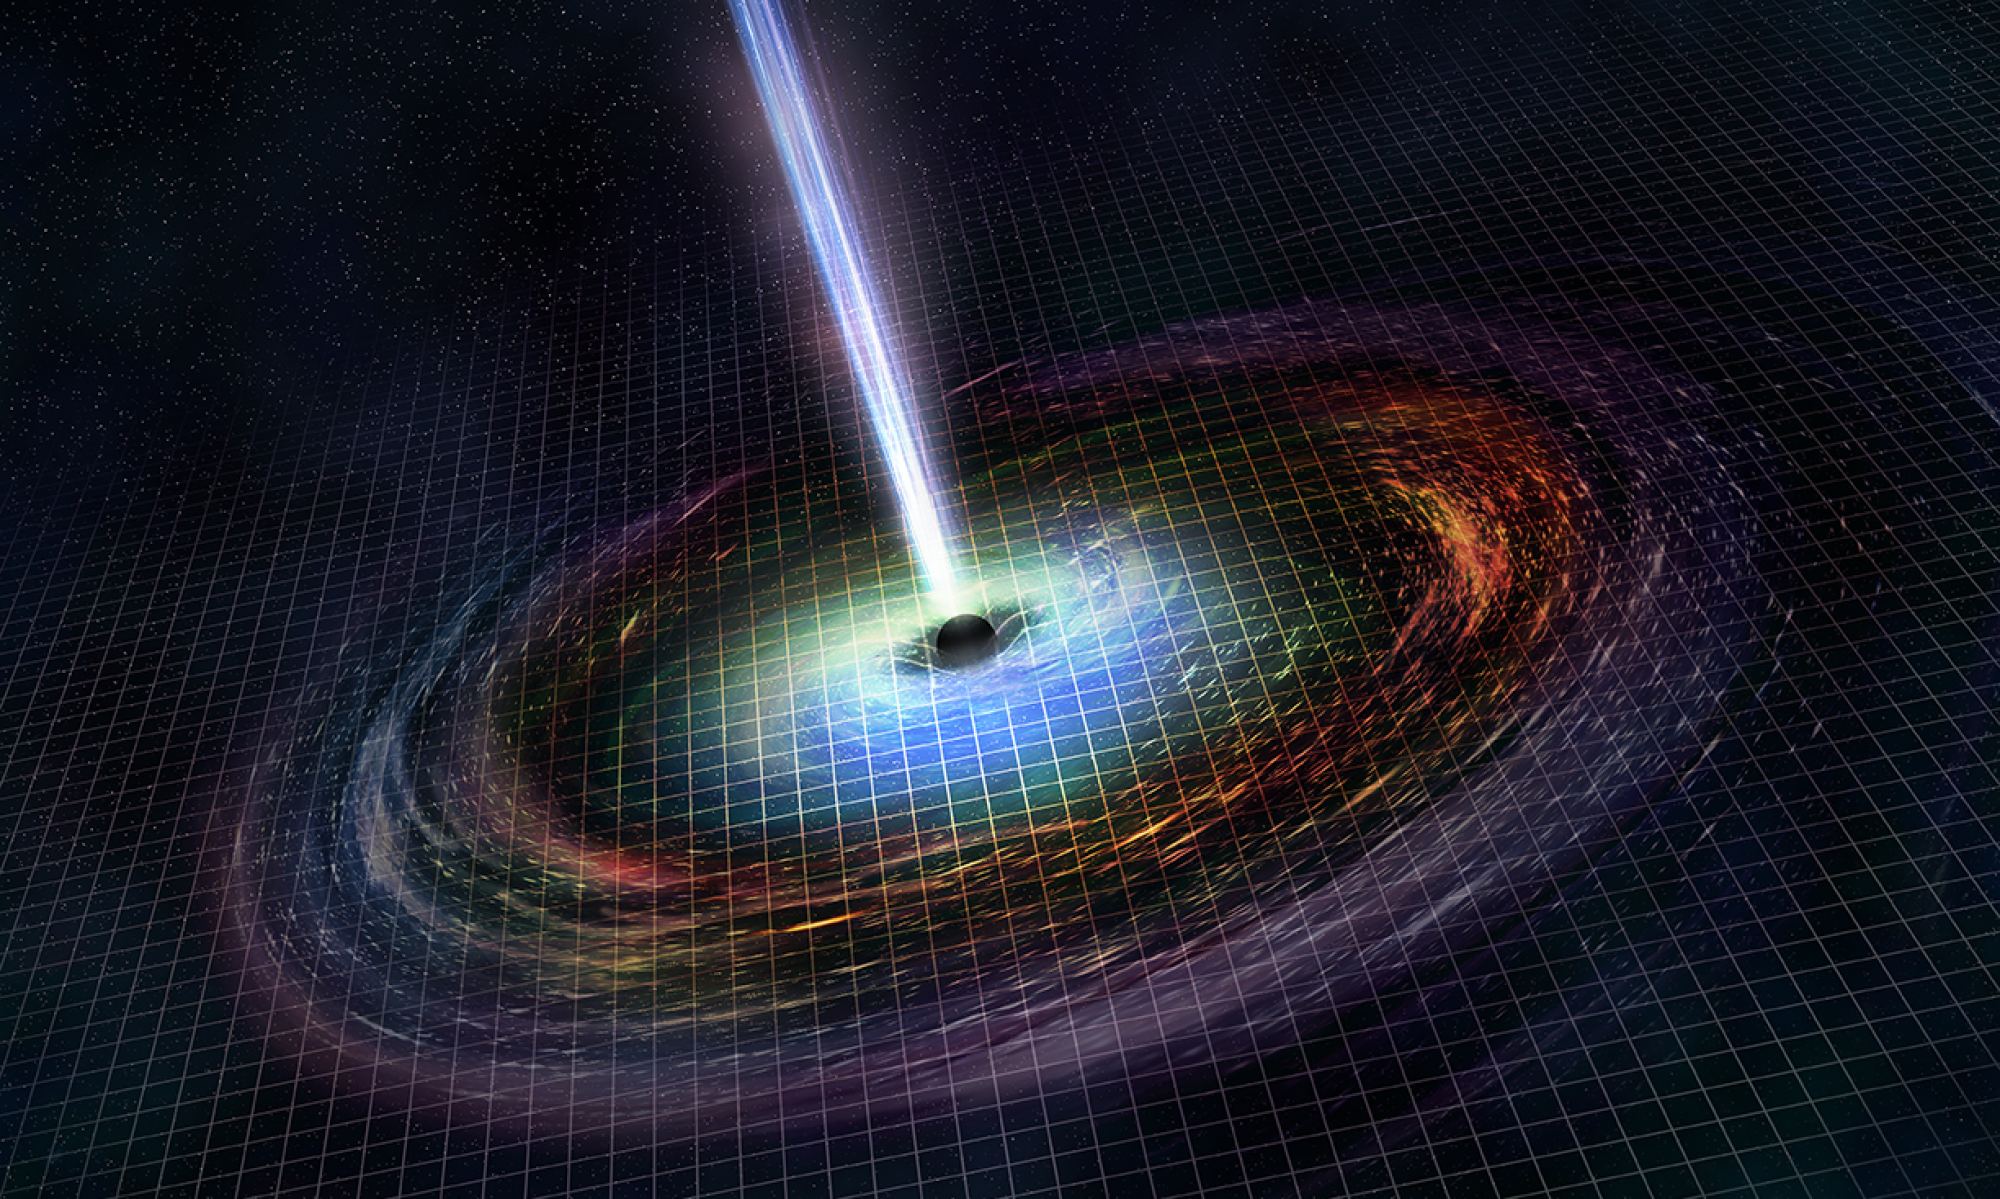 Физика астрофизика. Квазар Ulas j1342+0928. Сверхмассивная нейтронная звезда. Мираж четырехмерной черной дыры теория. Чёрные дыры во Вселенной.